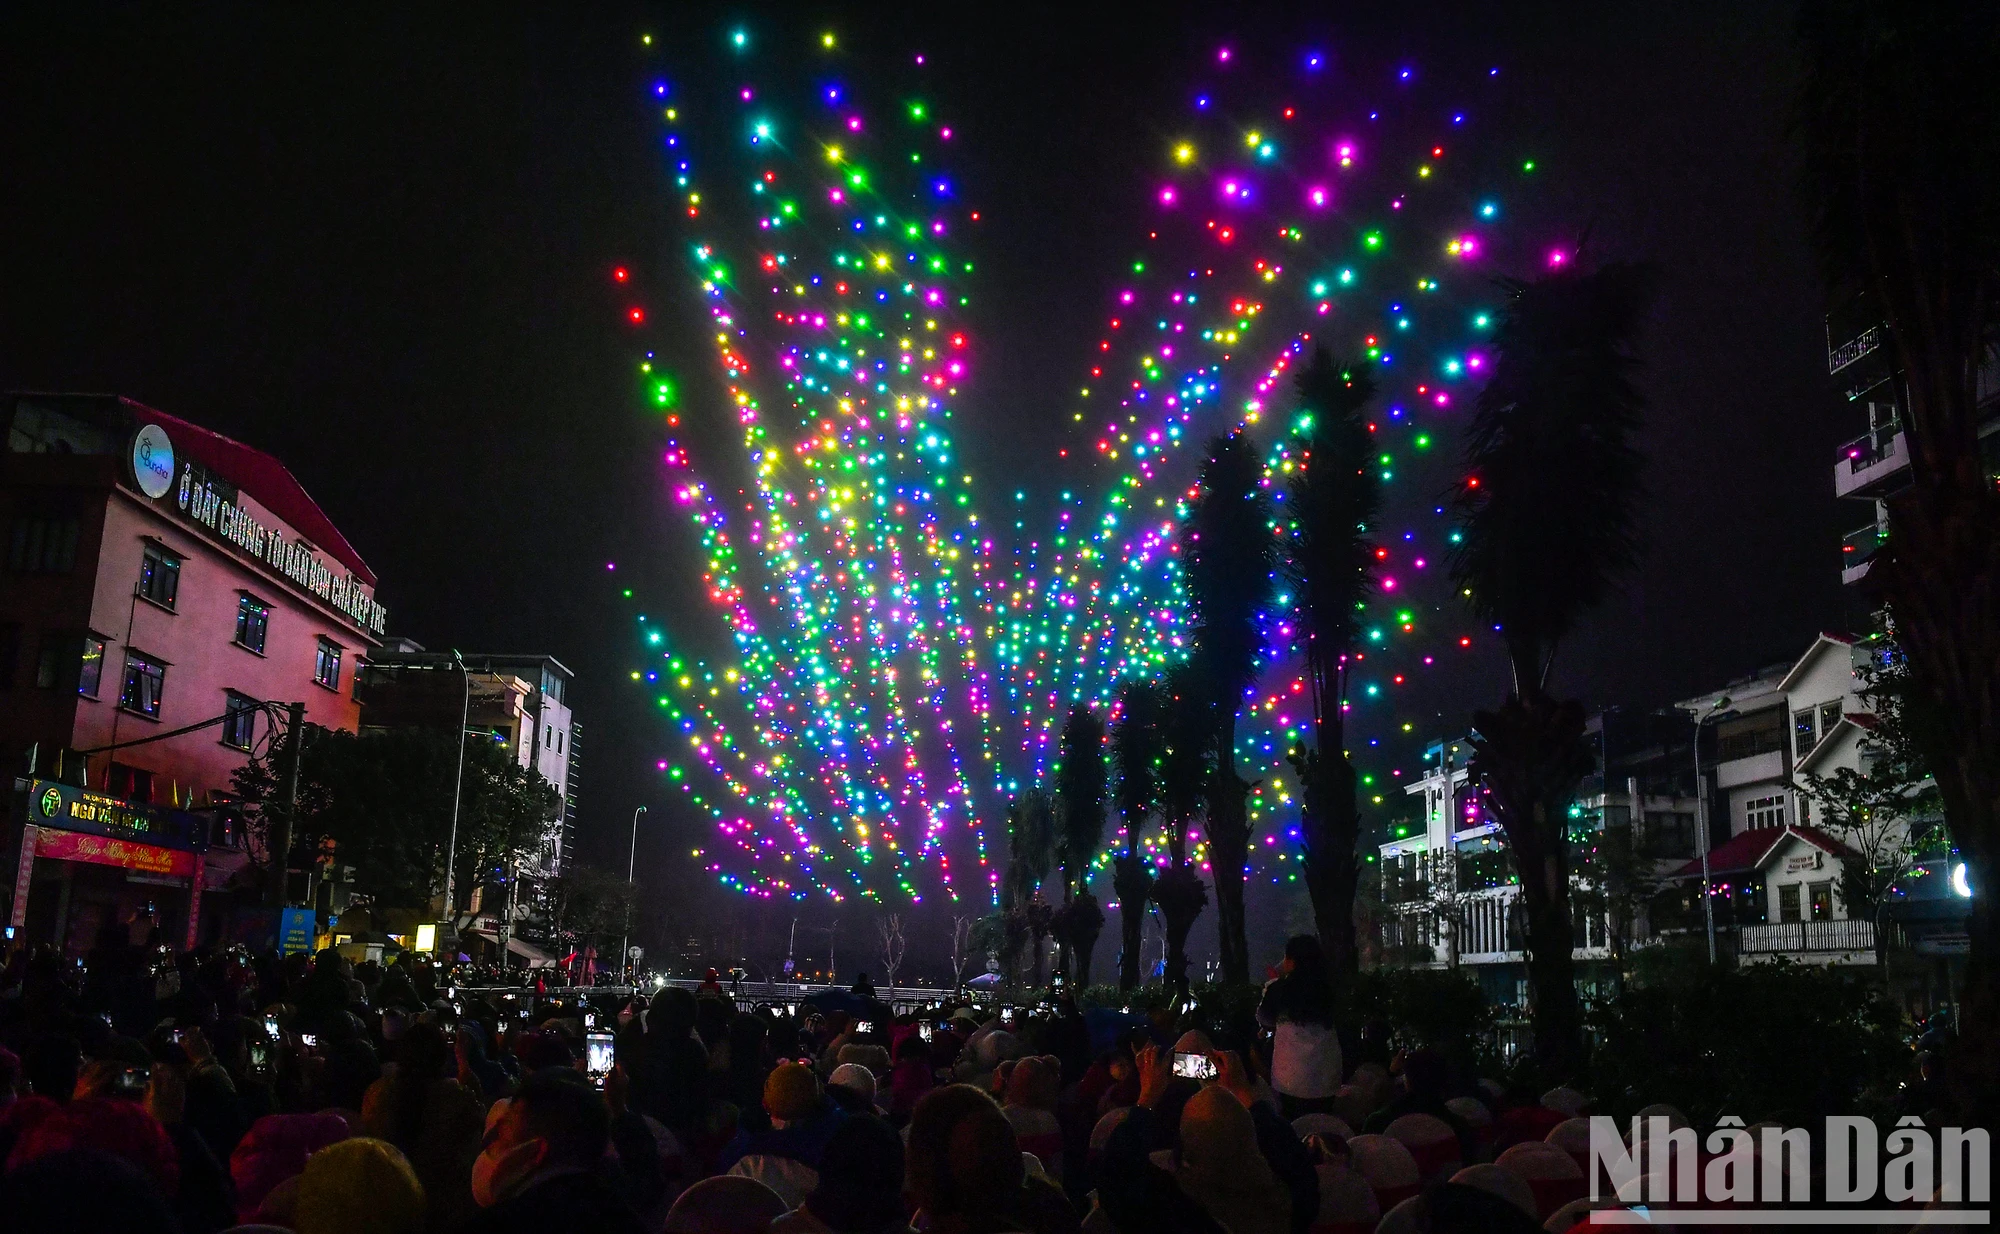 View - [Ảnh] Người dân Thủ đô choáng ngợp trước màn trình diễn ánh sáng nghệ thuật với 2.024 drones light 